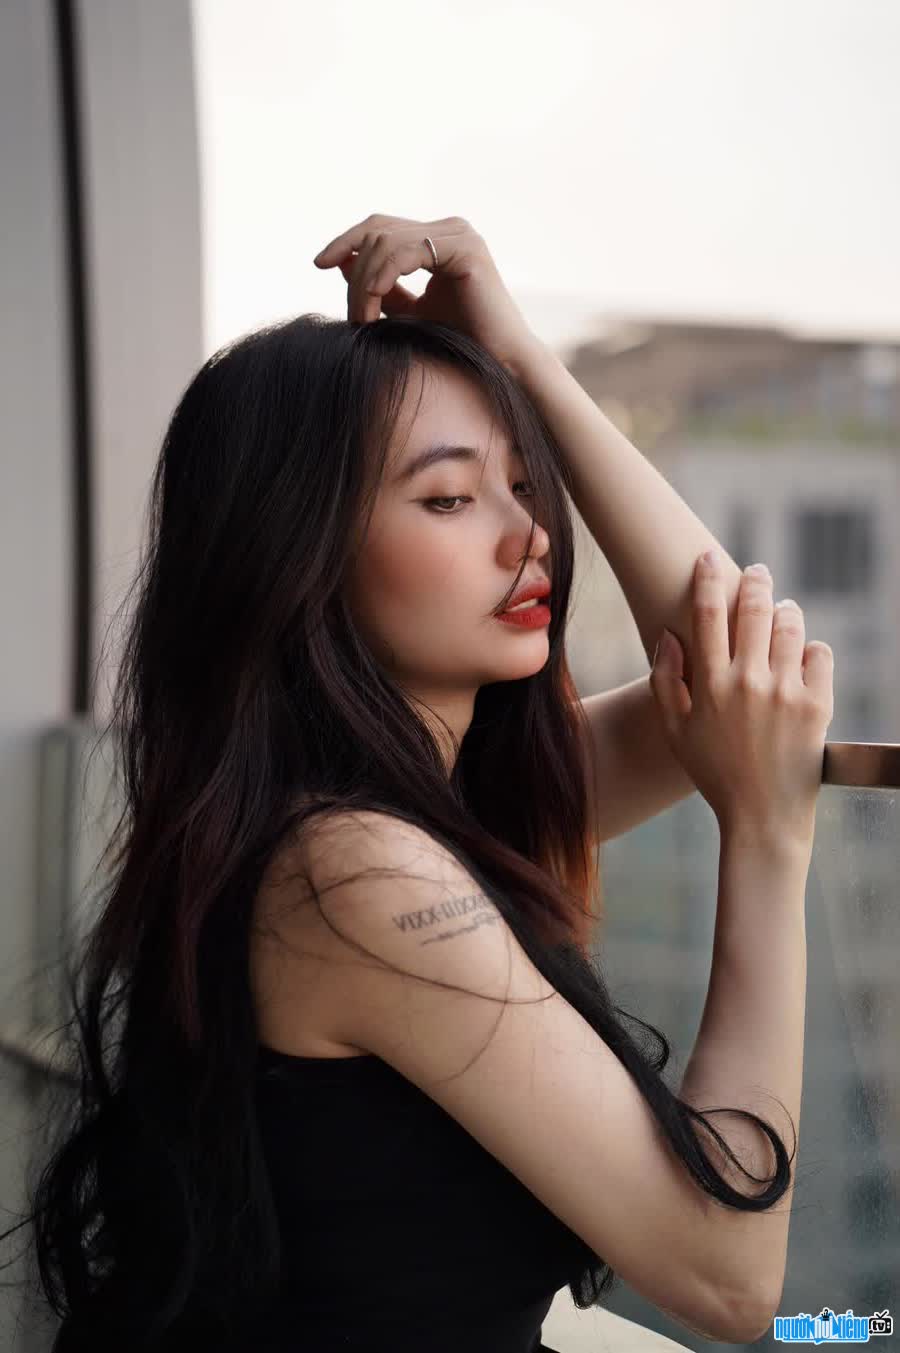 Daily life image of Model Trang Kelly